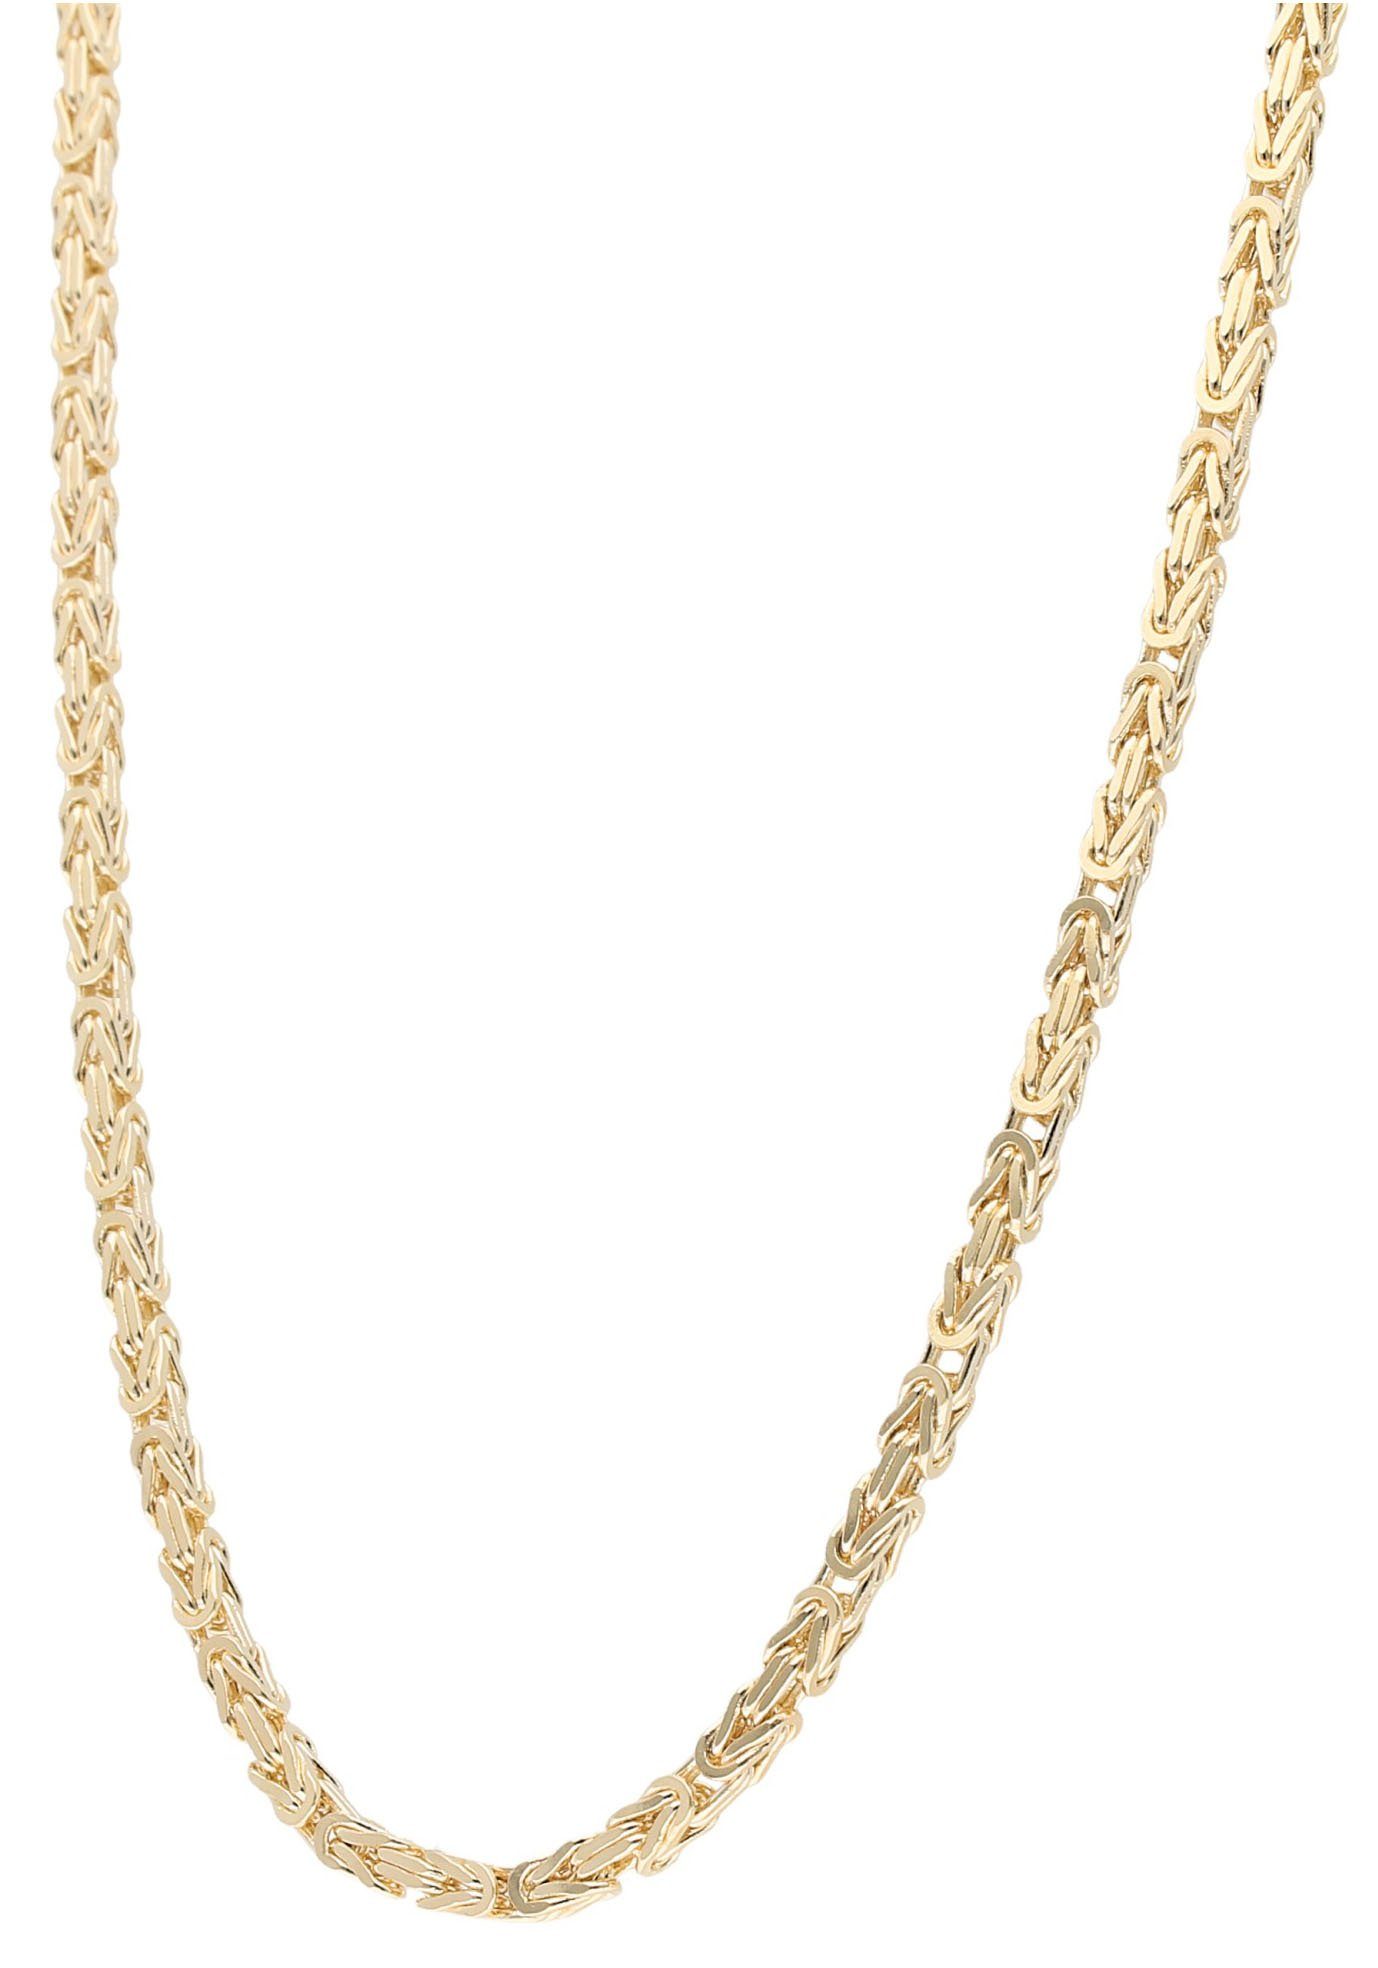 Firetti Goldkette »Königskettengliederung, 2,5 mm breit, diamantiert,  massiv« online kaufen | OTTO